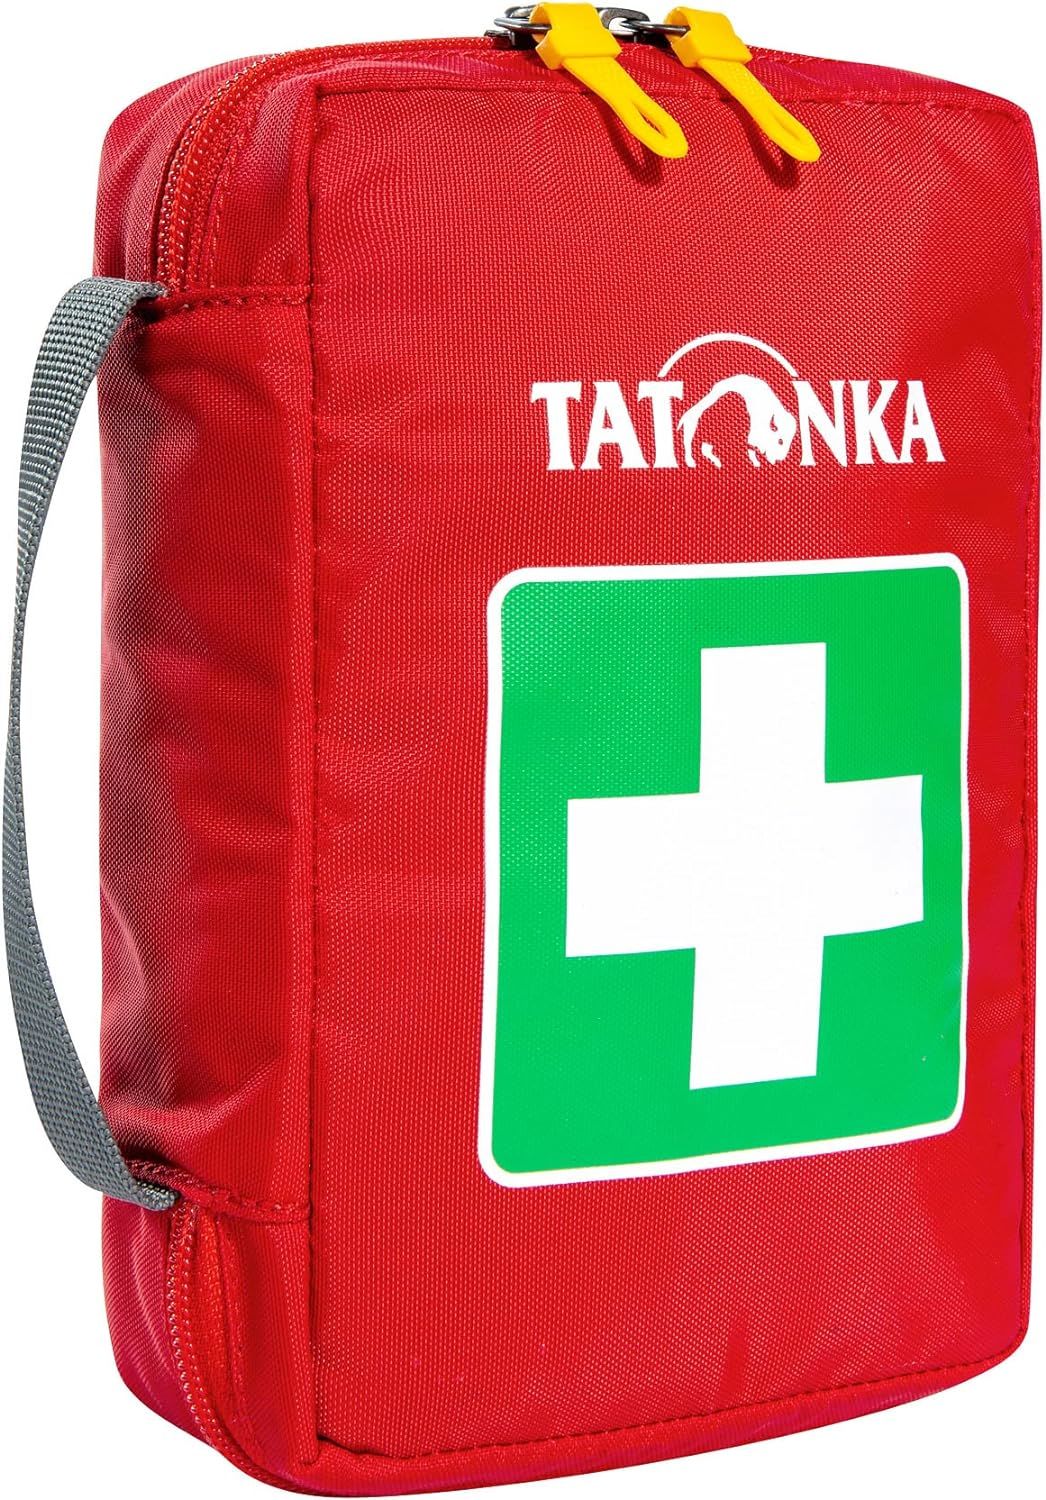 Tatonka ilk yardım çantası - L